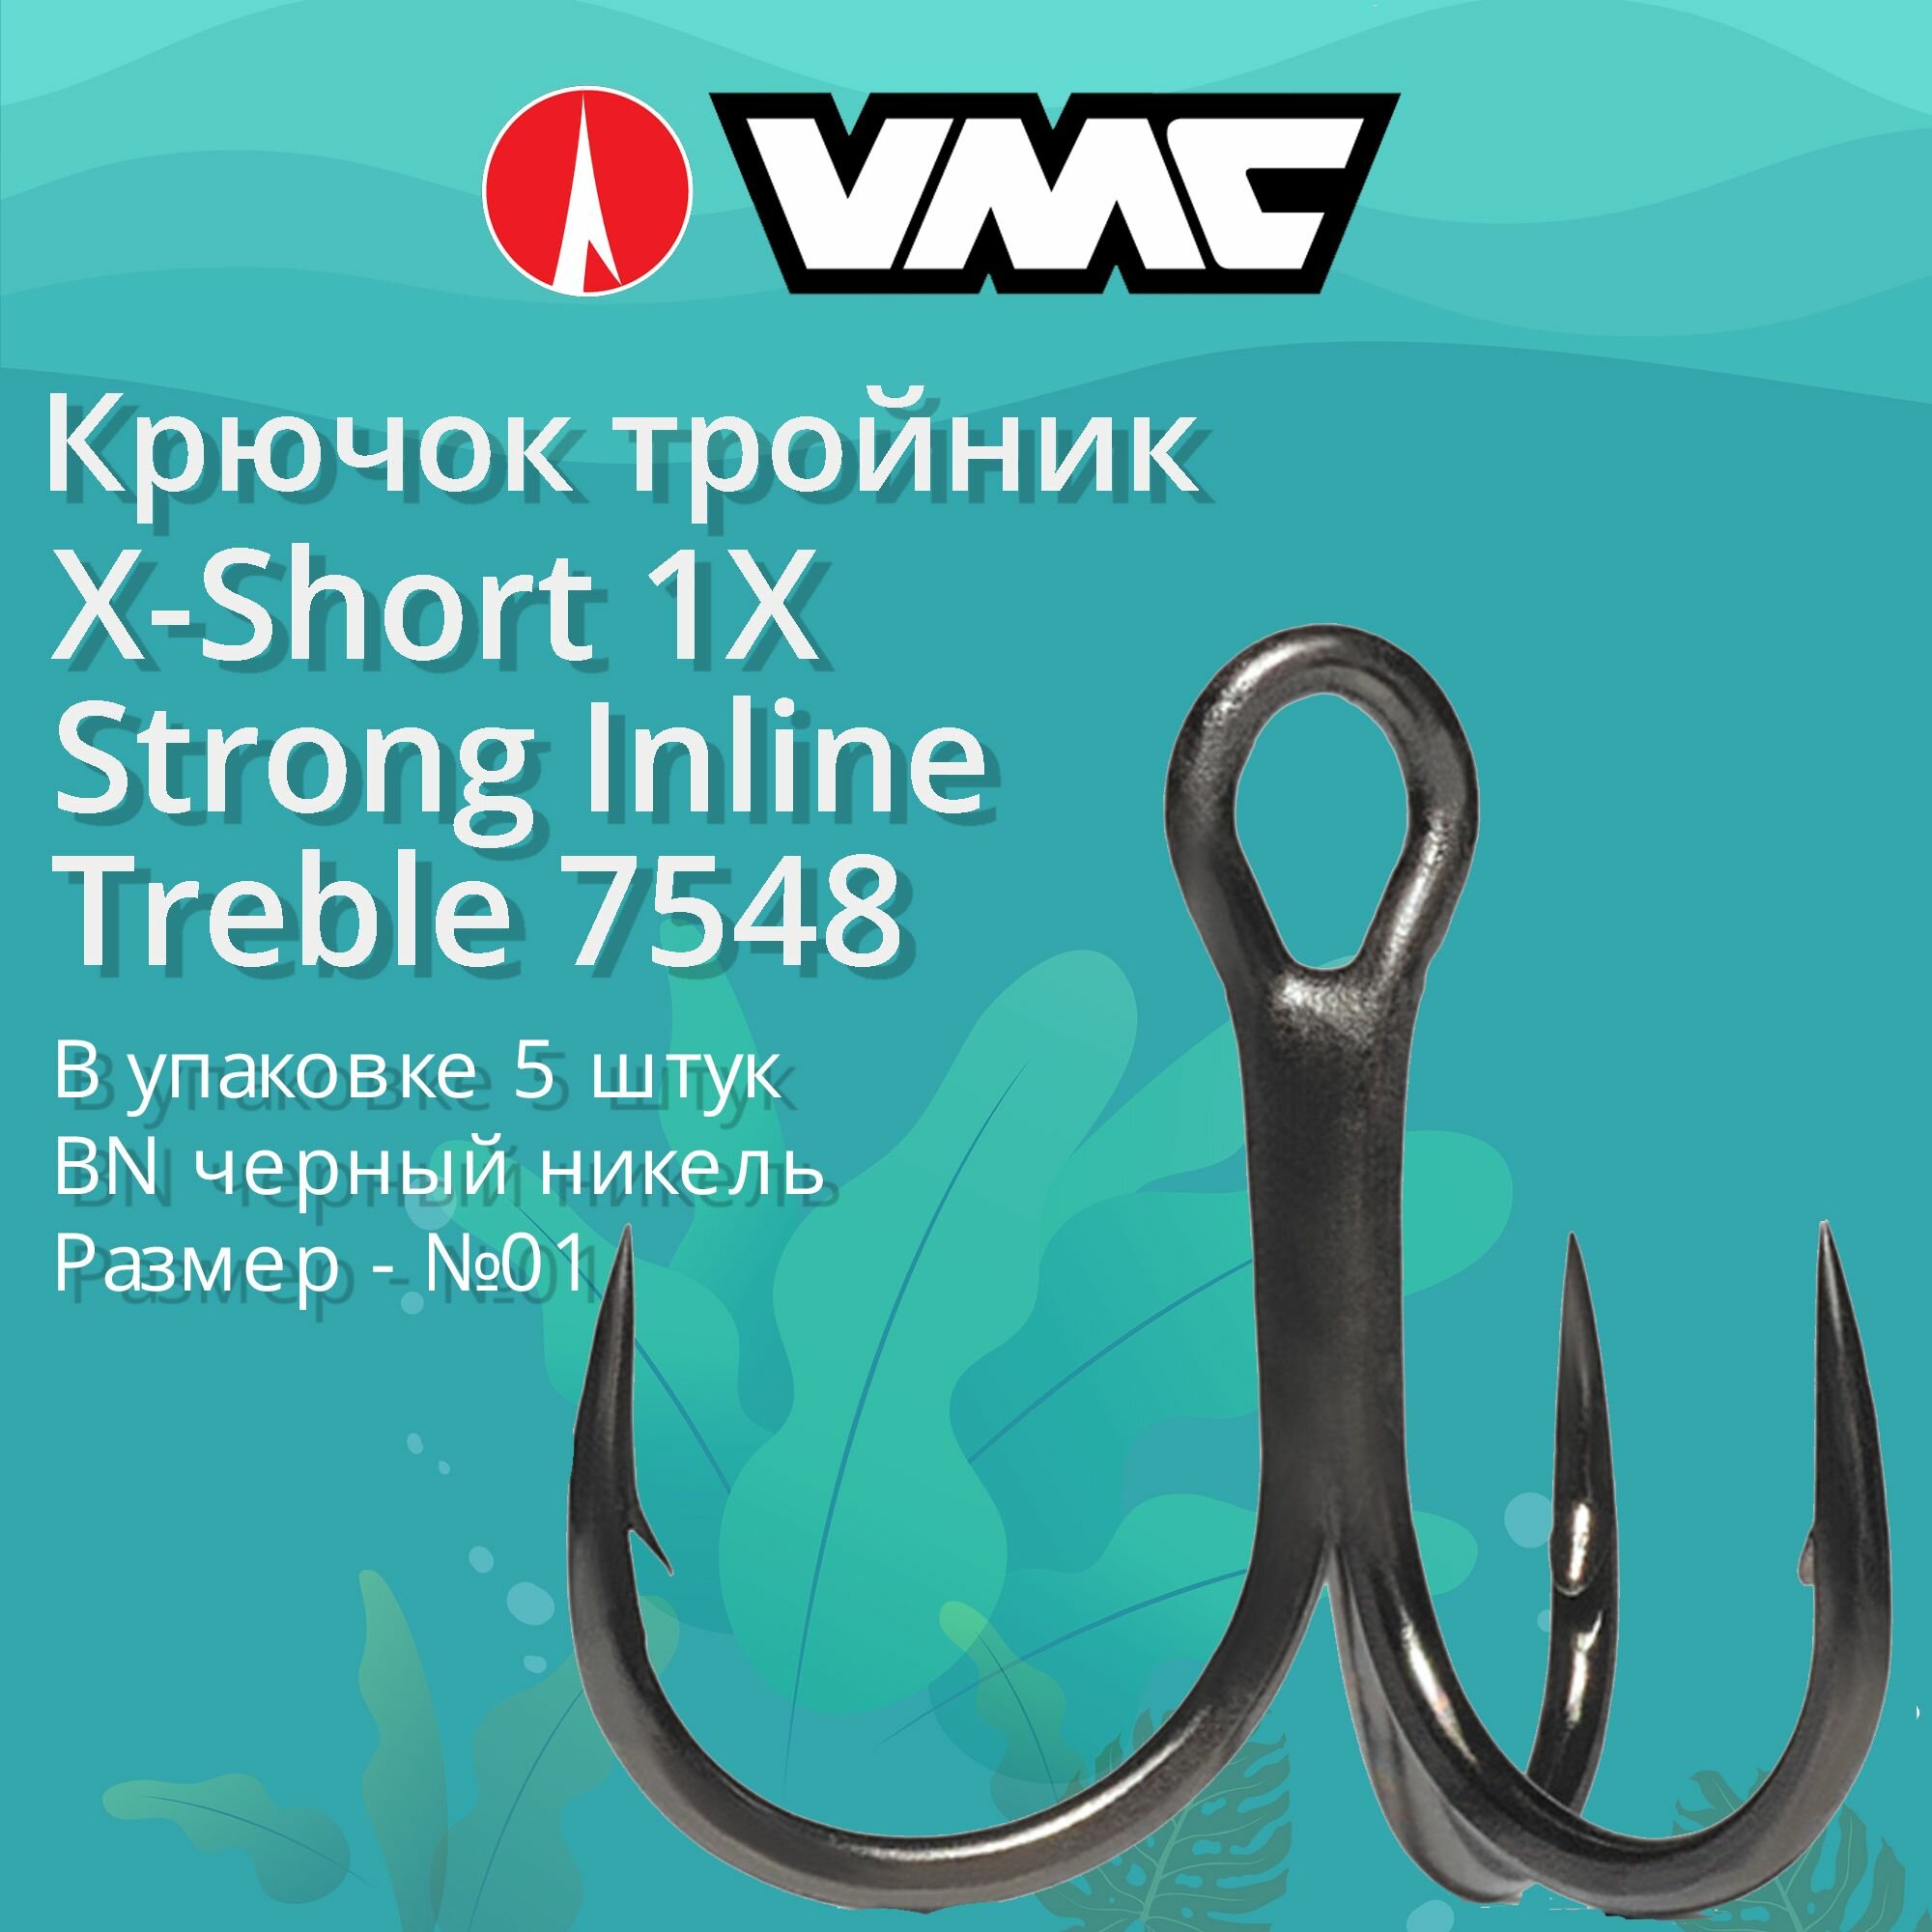 Крючки для рыбалки (тройник) VMC X-Short 1X Strong Inline Treble 7548 BN (черн. никель) №01 (упаковка 5 штук)